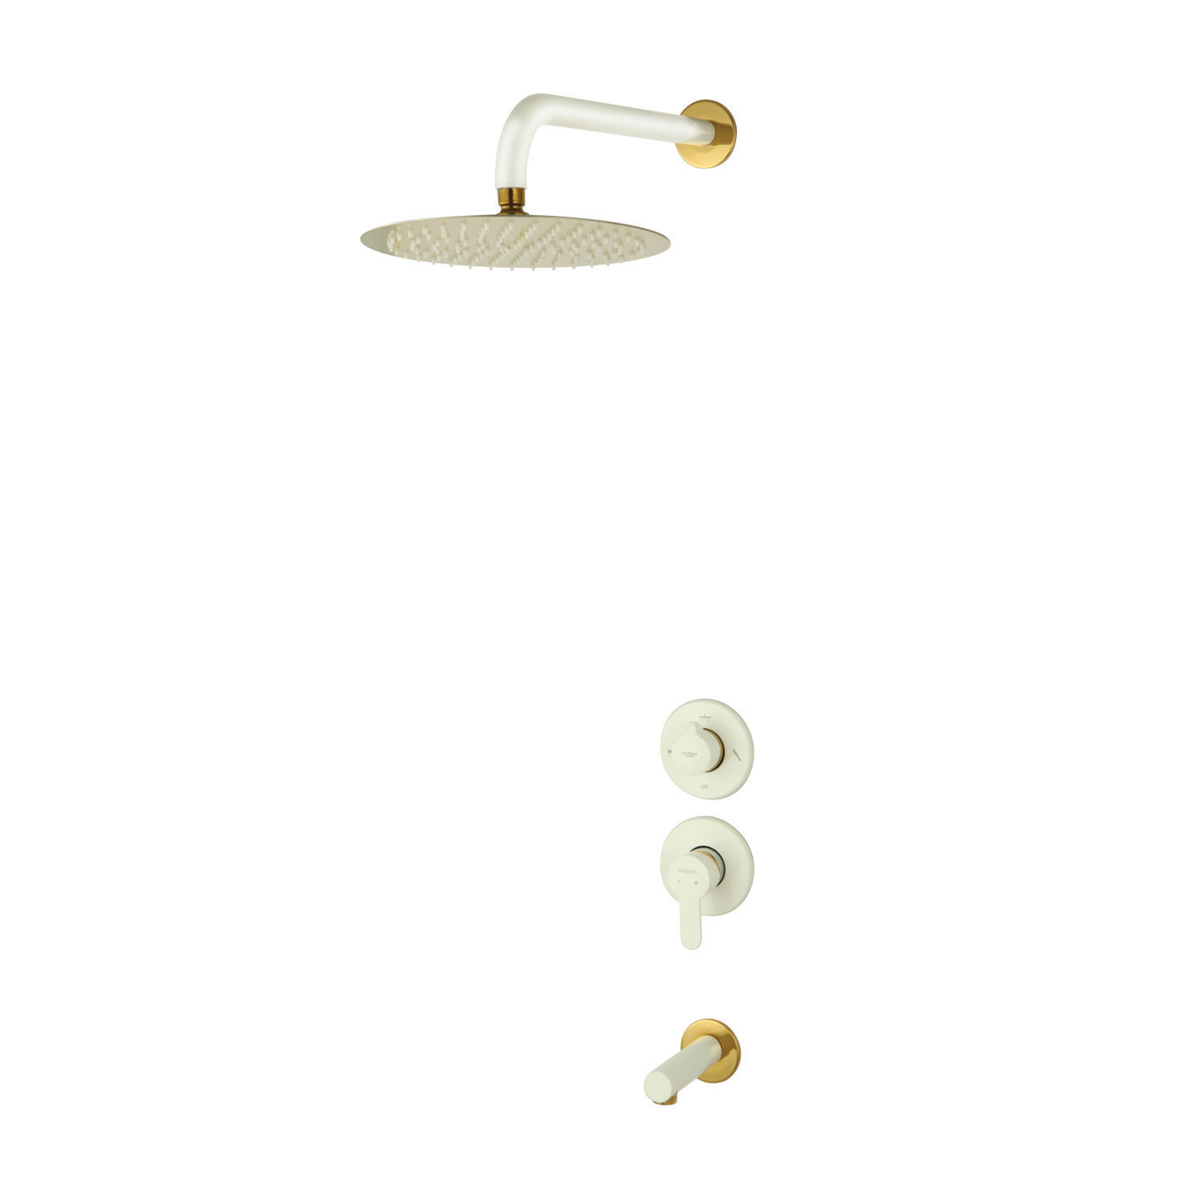 شیر حمام و مکانیزم توکار ویوات راسان مدل تنسو کلاس (2) سفید طلایی